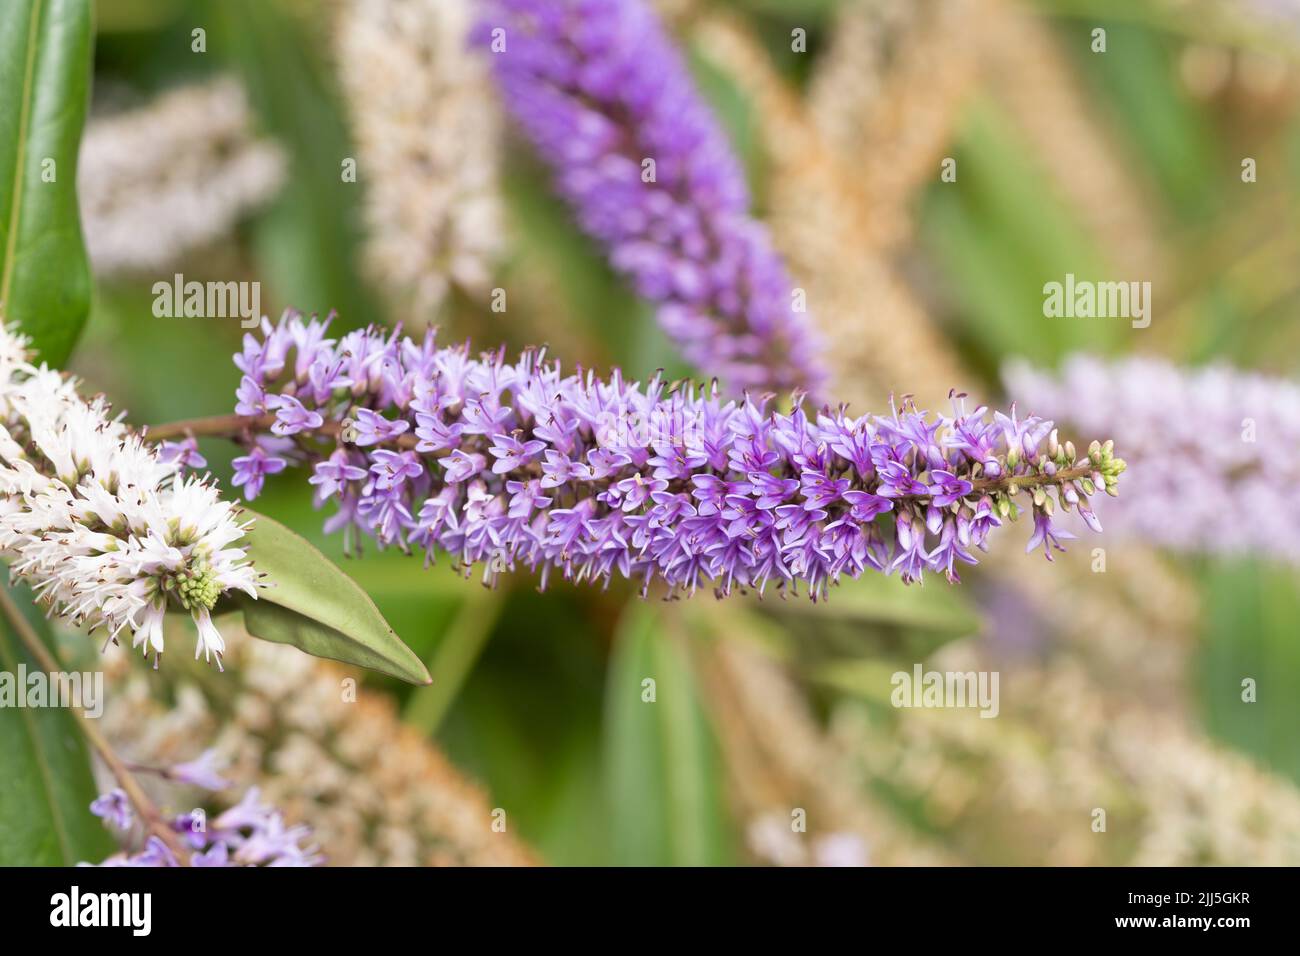 Una belleza Verónica a mitad de verano (o belleza hebe a mitad de verano) Un arbusto siempre verde con flores púrpuras y blancas que florecen en julio en Worcestershire, Inglaterra Foto de stock